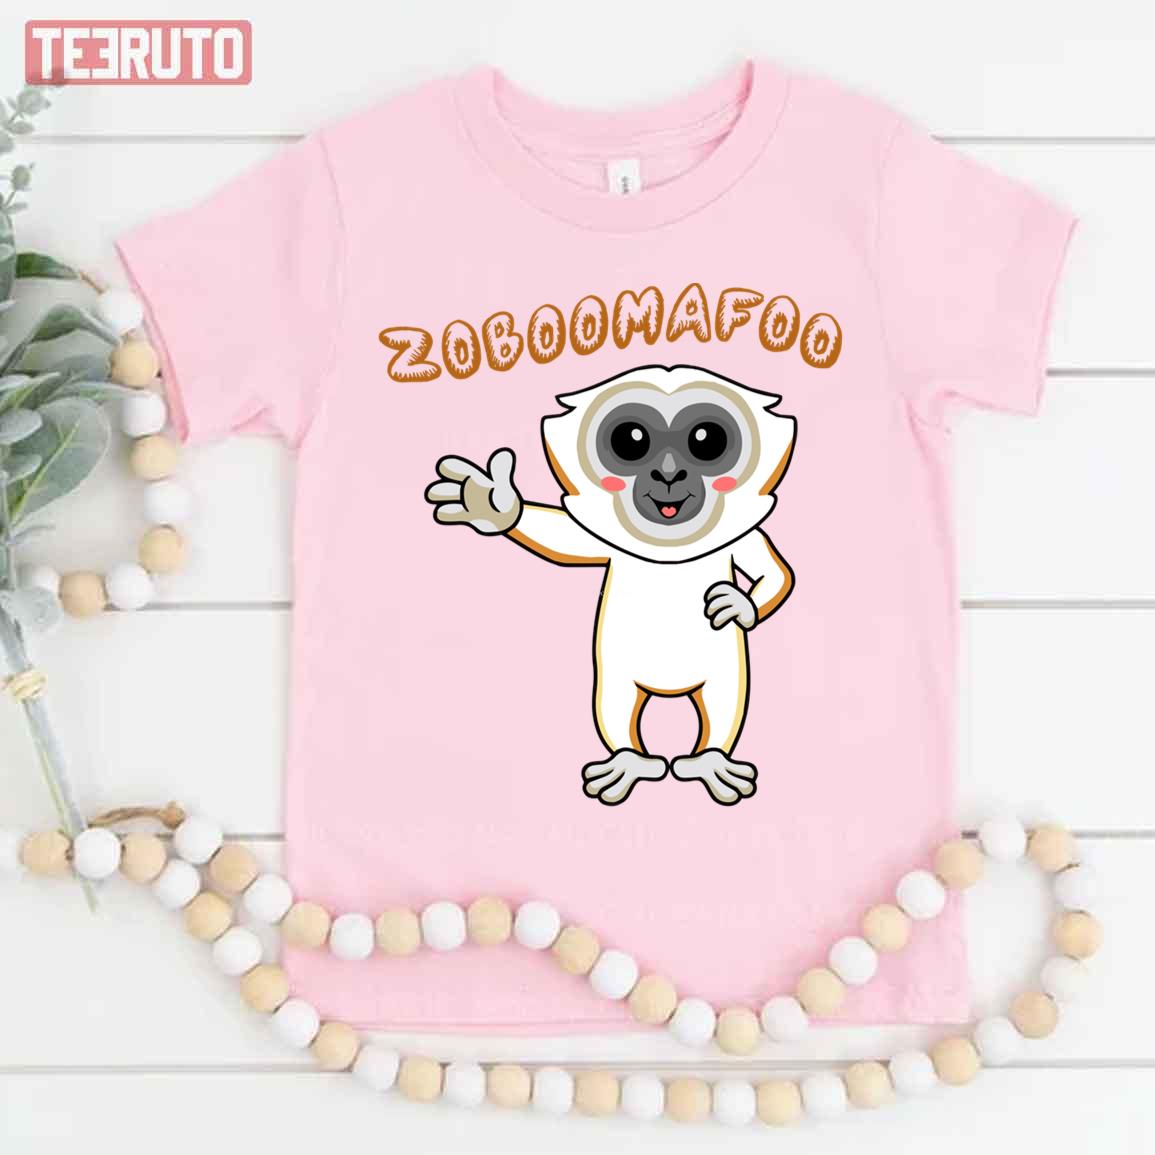 Zoboomafoo Funny Cartoon Unisex T-Shirt